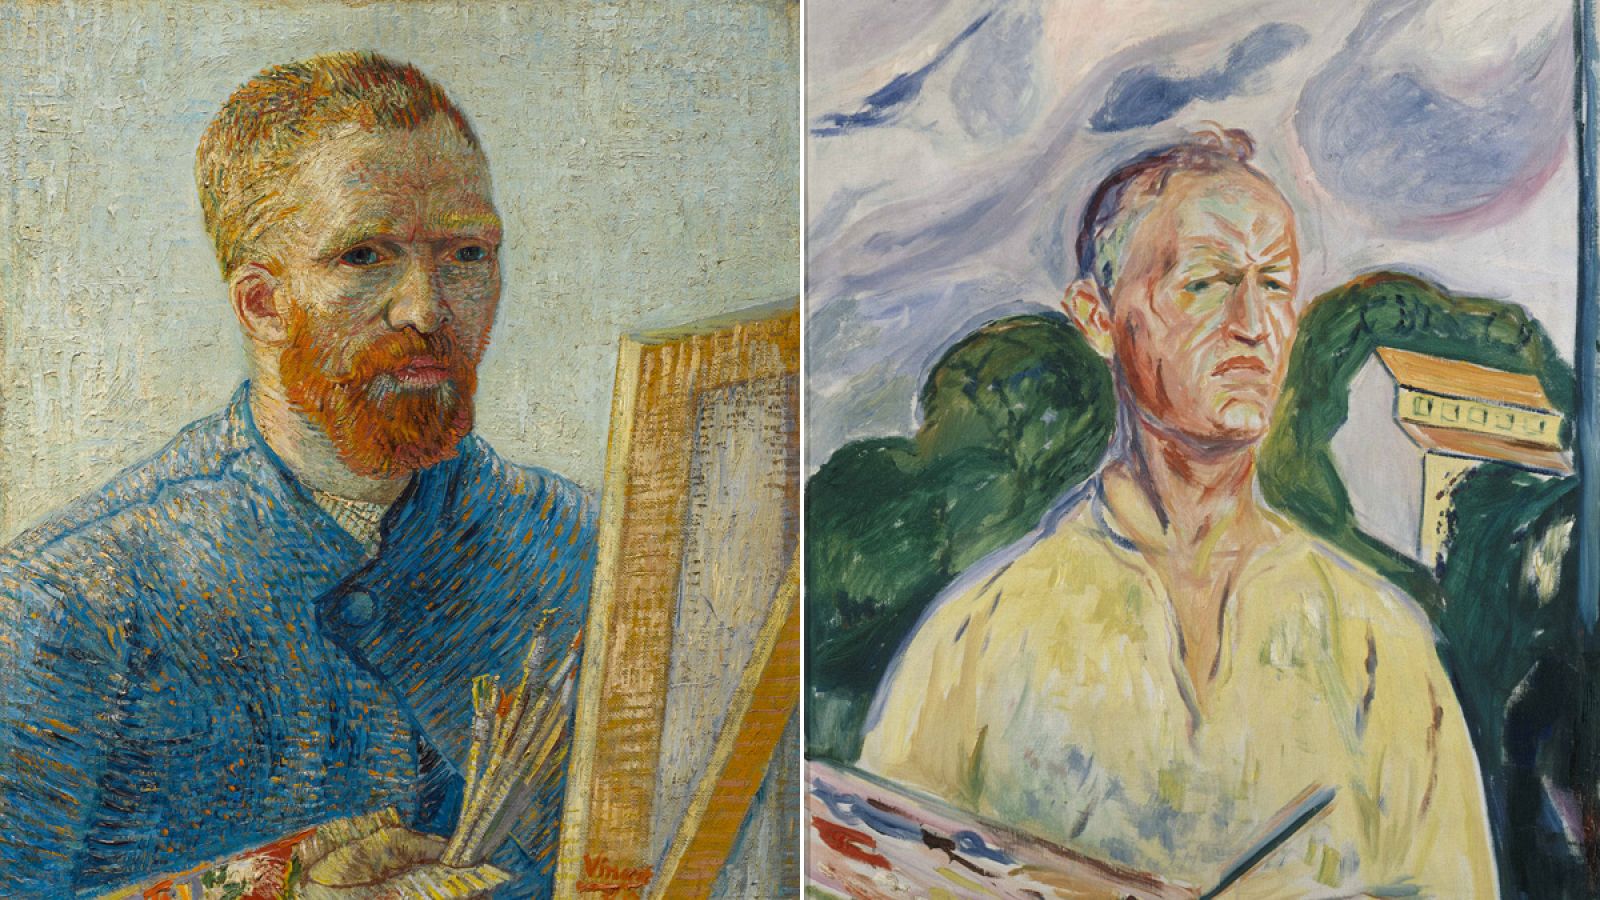 Izquierda, Autorretrato de Vincent van Gogh como pintor, 1887-1888 (Van Gogh Museum, Amsterdam). Dcha: Autorretrato de Edvard Munch con paleta,1926. (Colección privada).